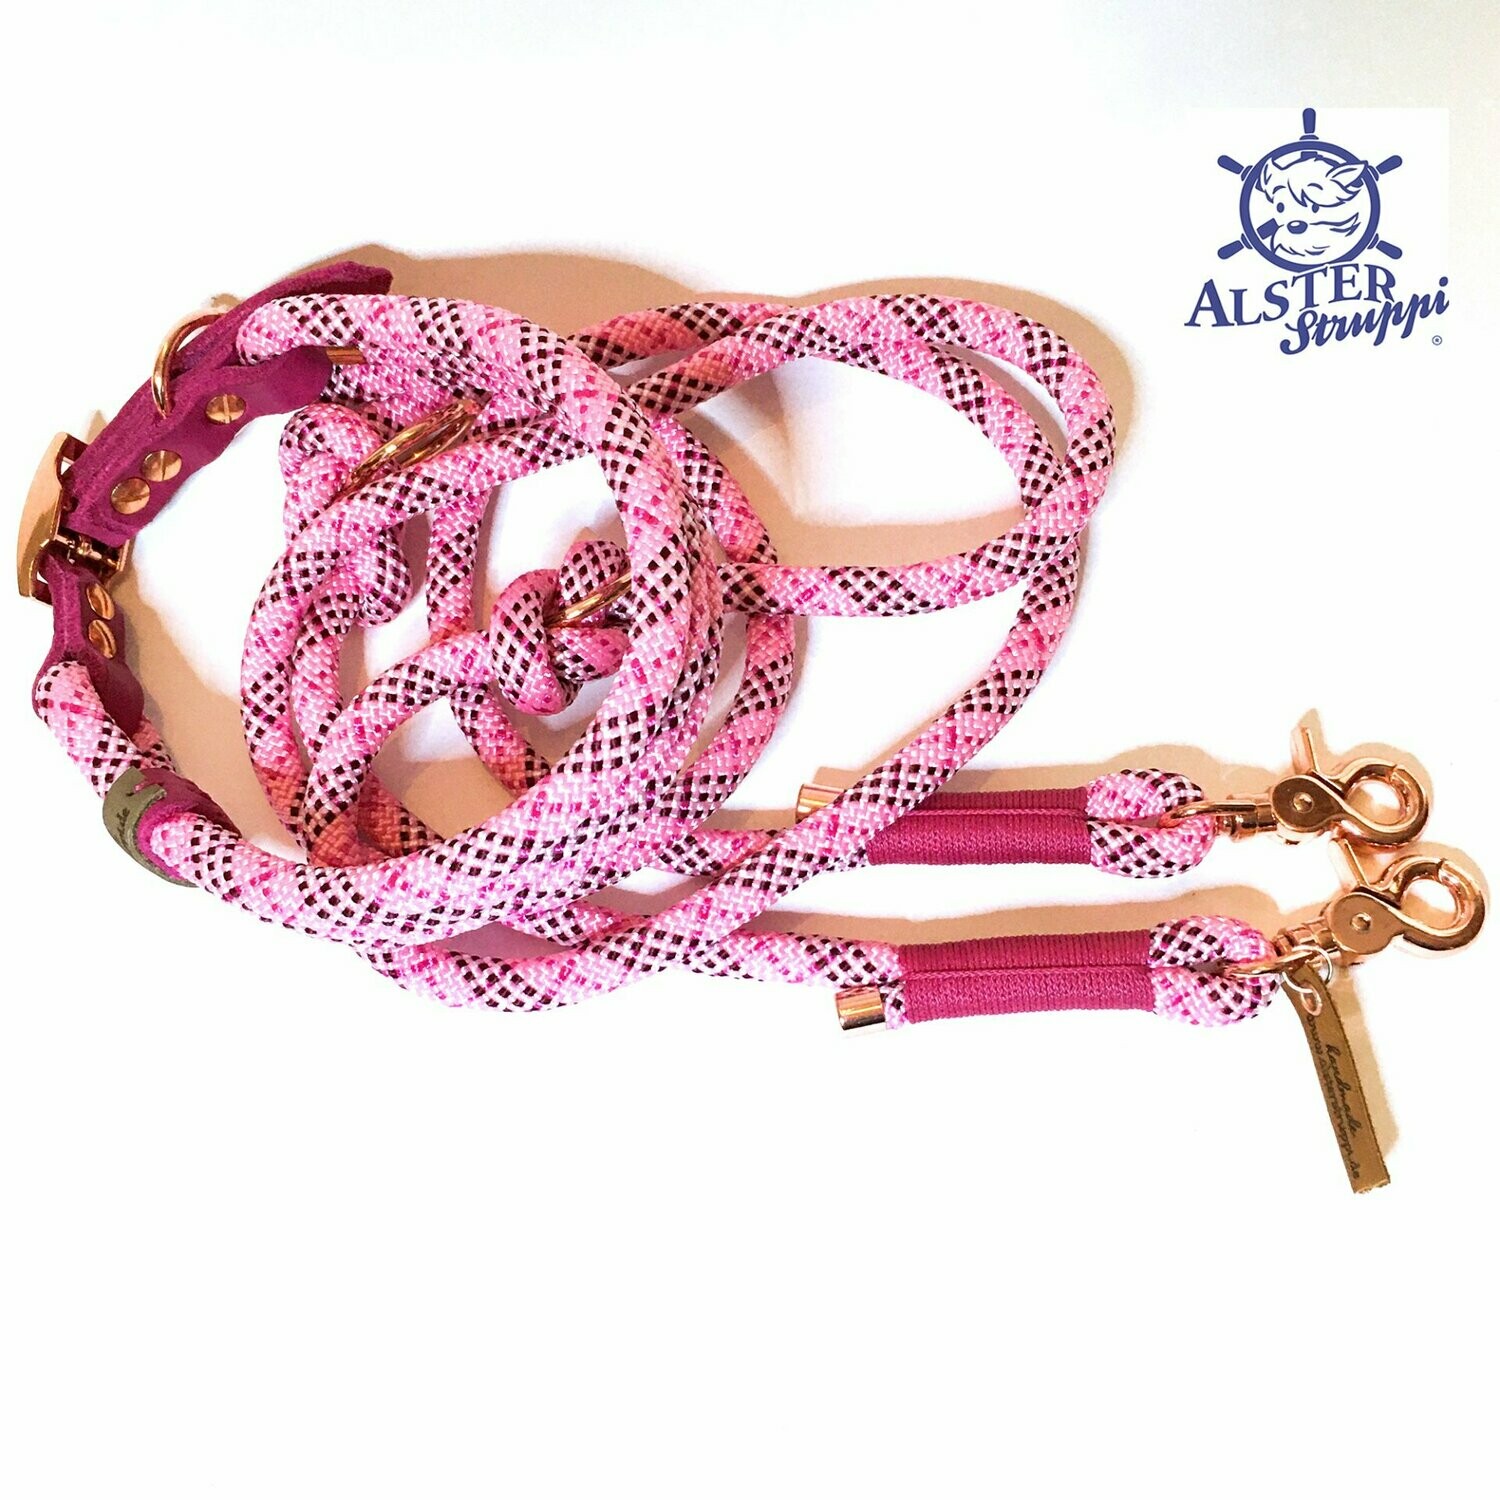 Leine Halsband Set rosa bordeaux pink weiß, für mittelgroße Hunde,  verstellbar